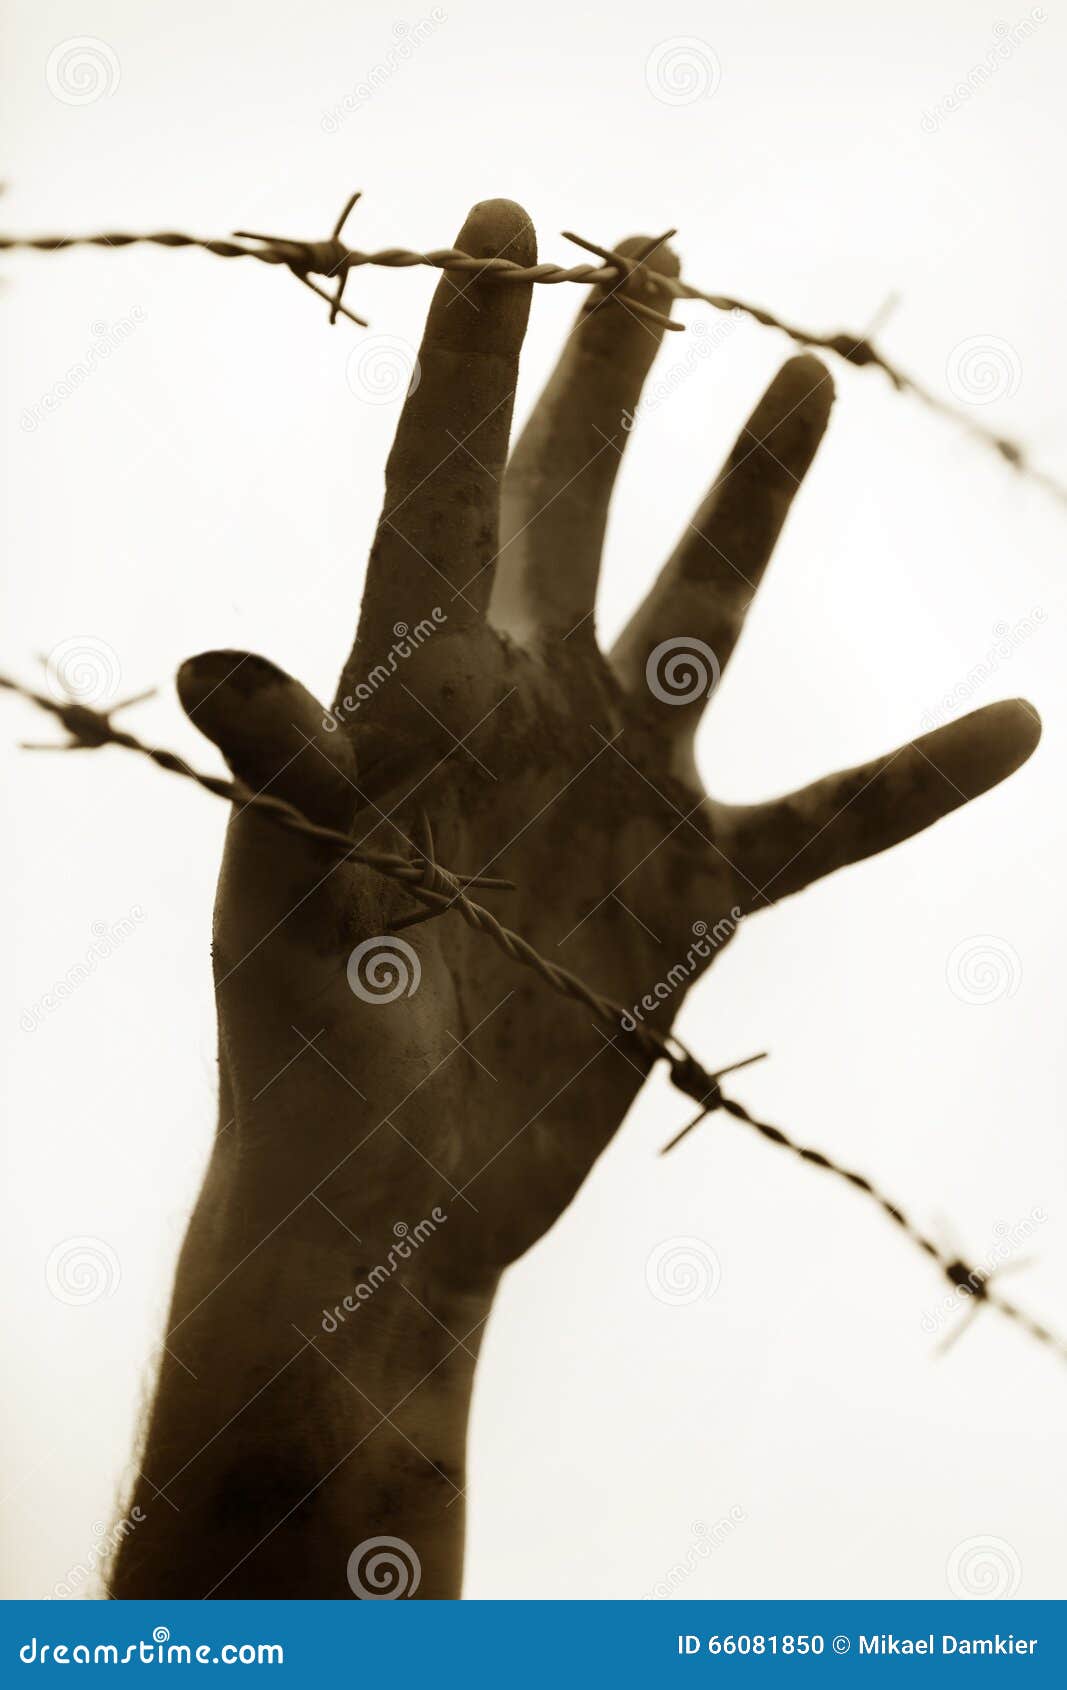 refugee men and fence